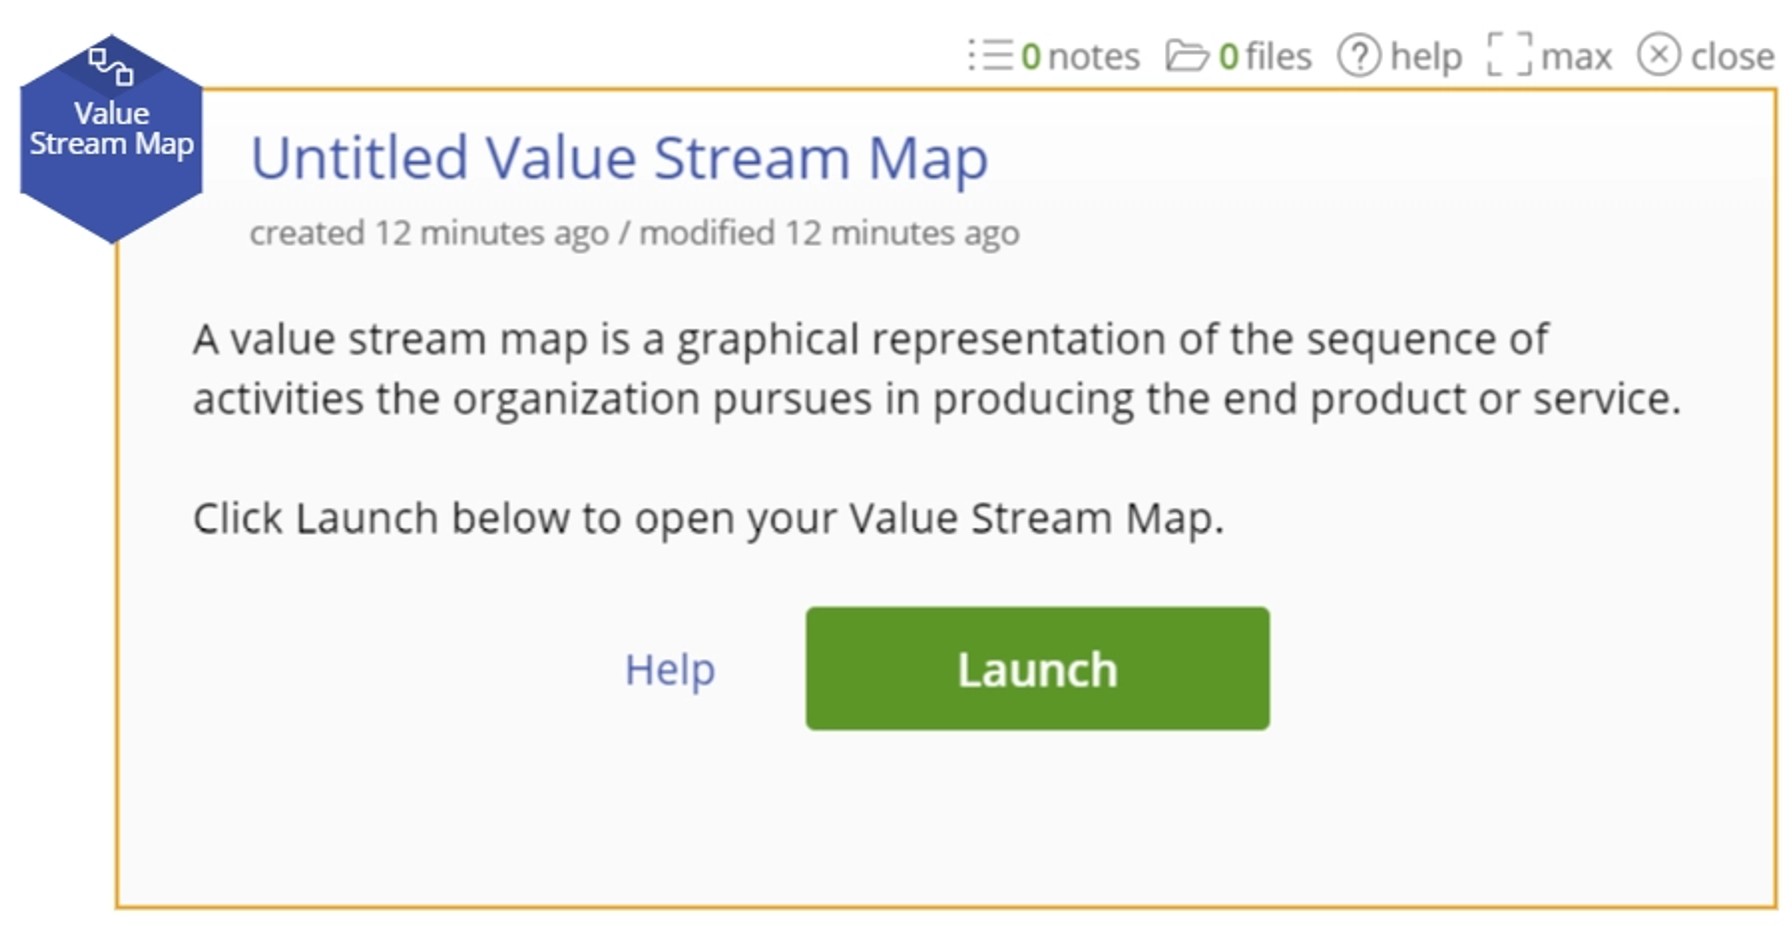 Value stream map launch menu.